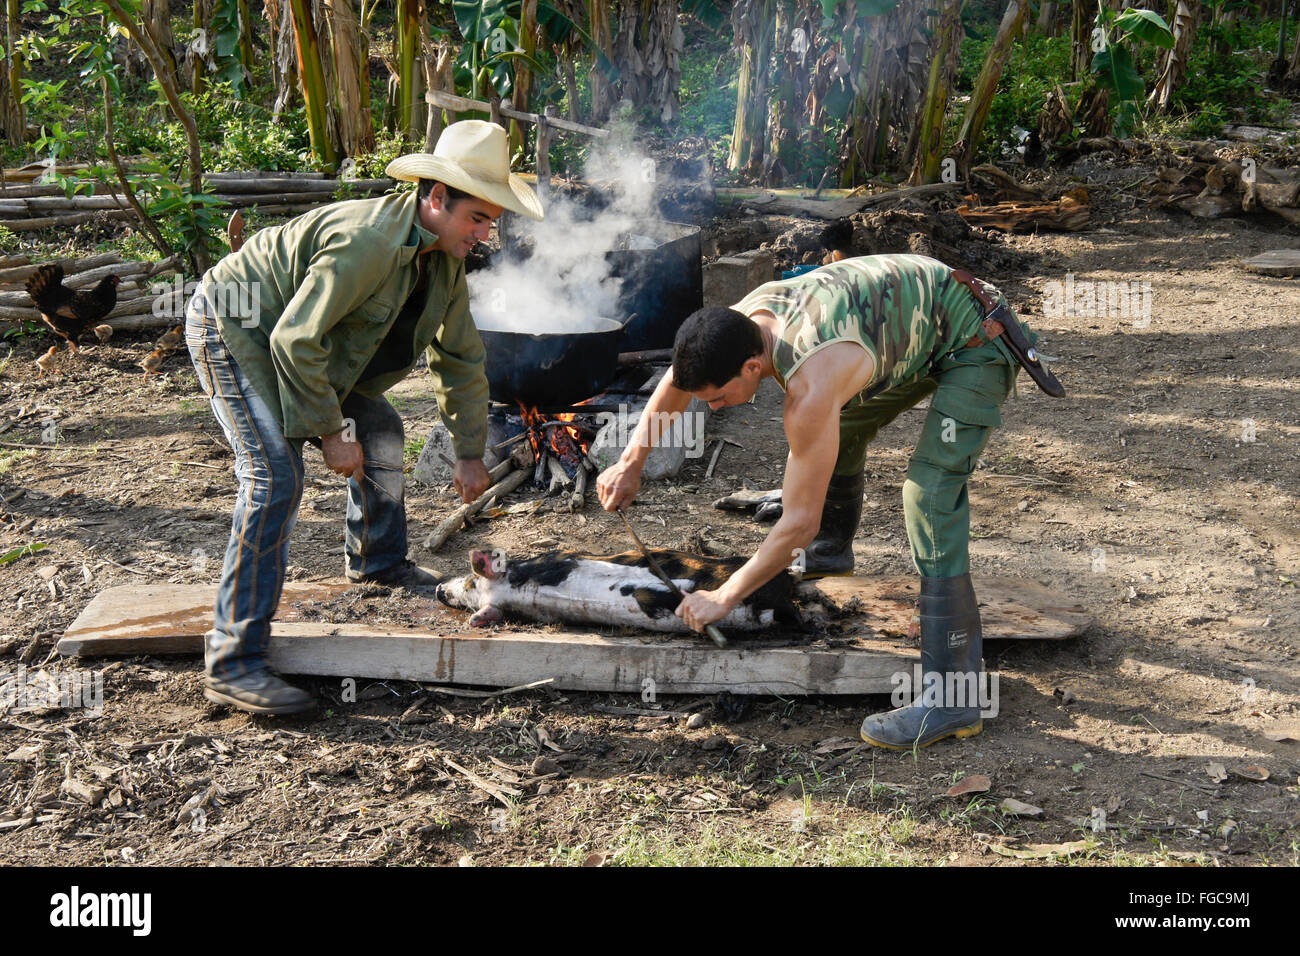 Landwirte, die Haarentfernung von einem Schwein, Valle de Los Ingenios (Tal der Zuckerfabriken), Trinidad, Kuba Stockfoto